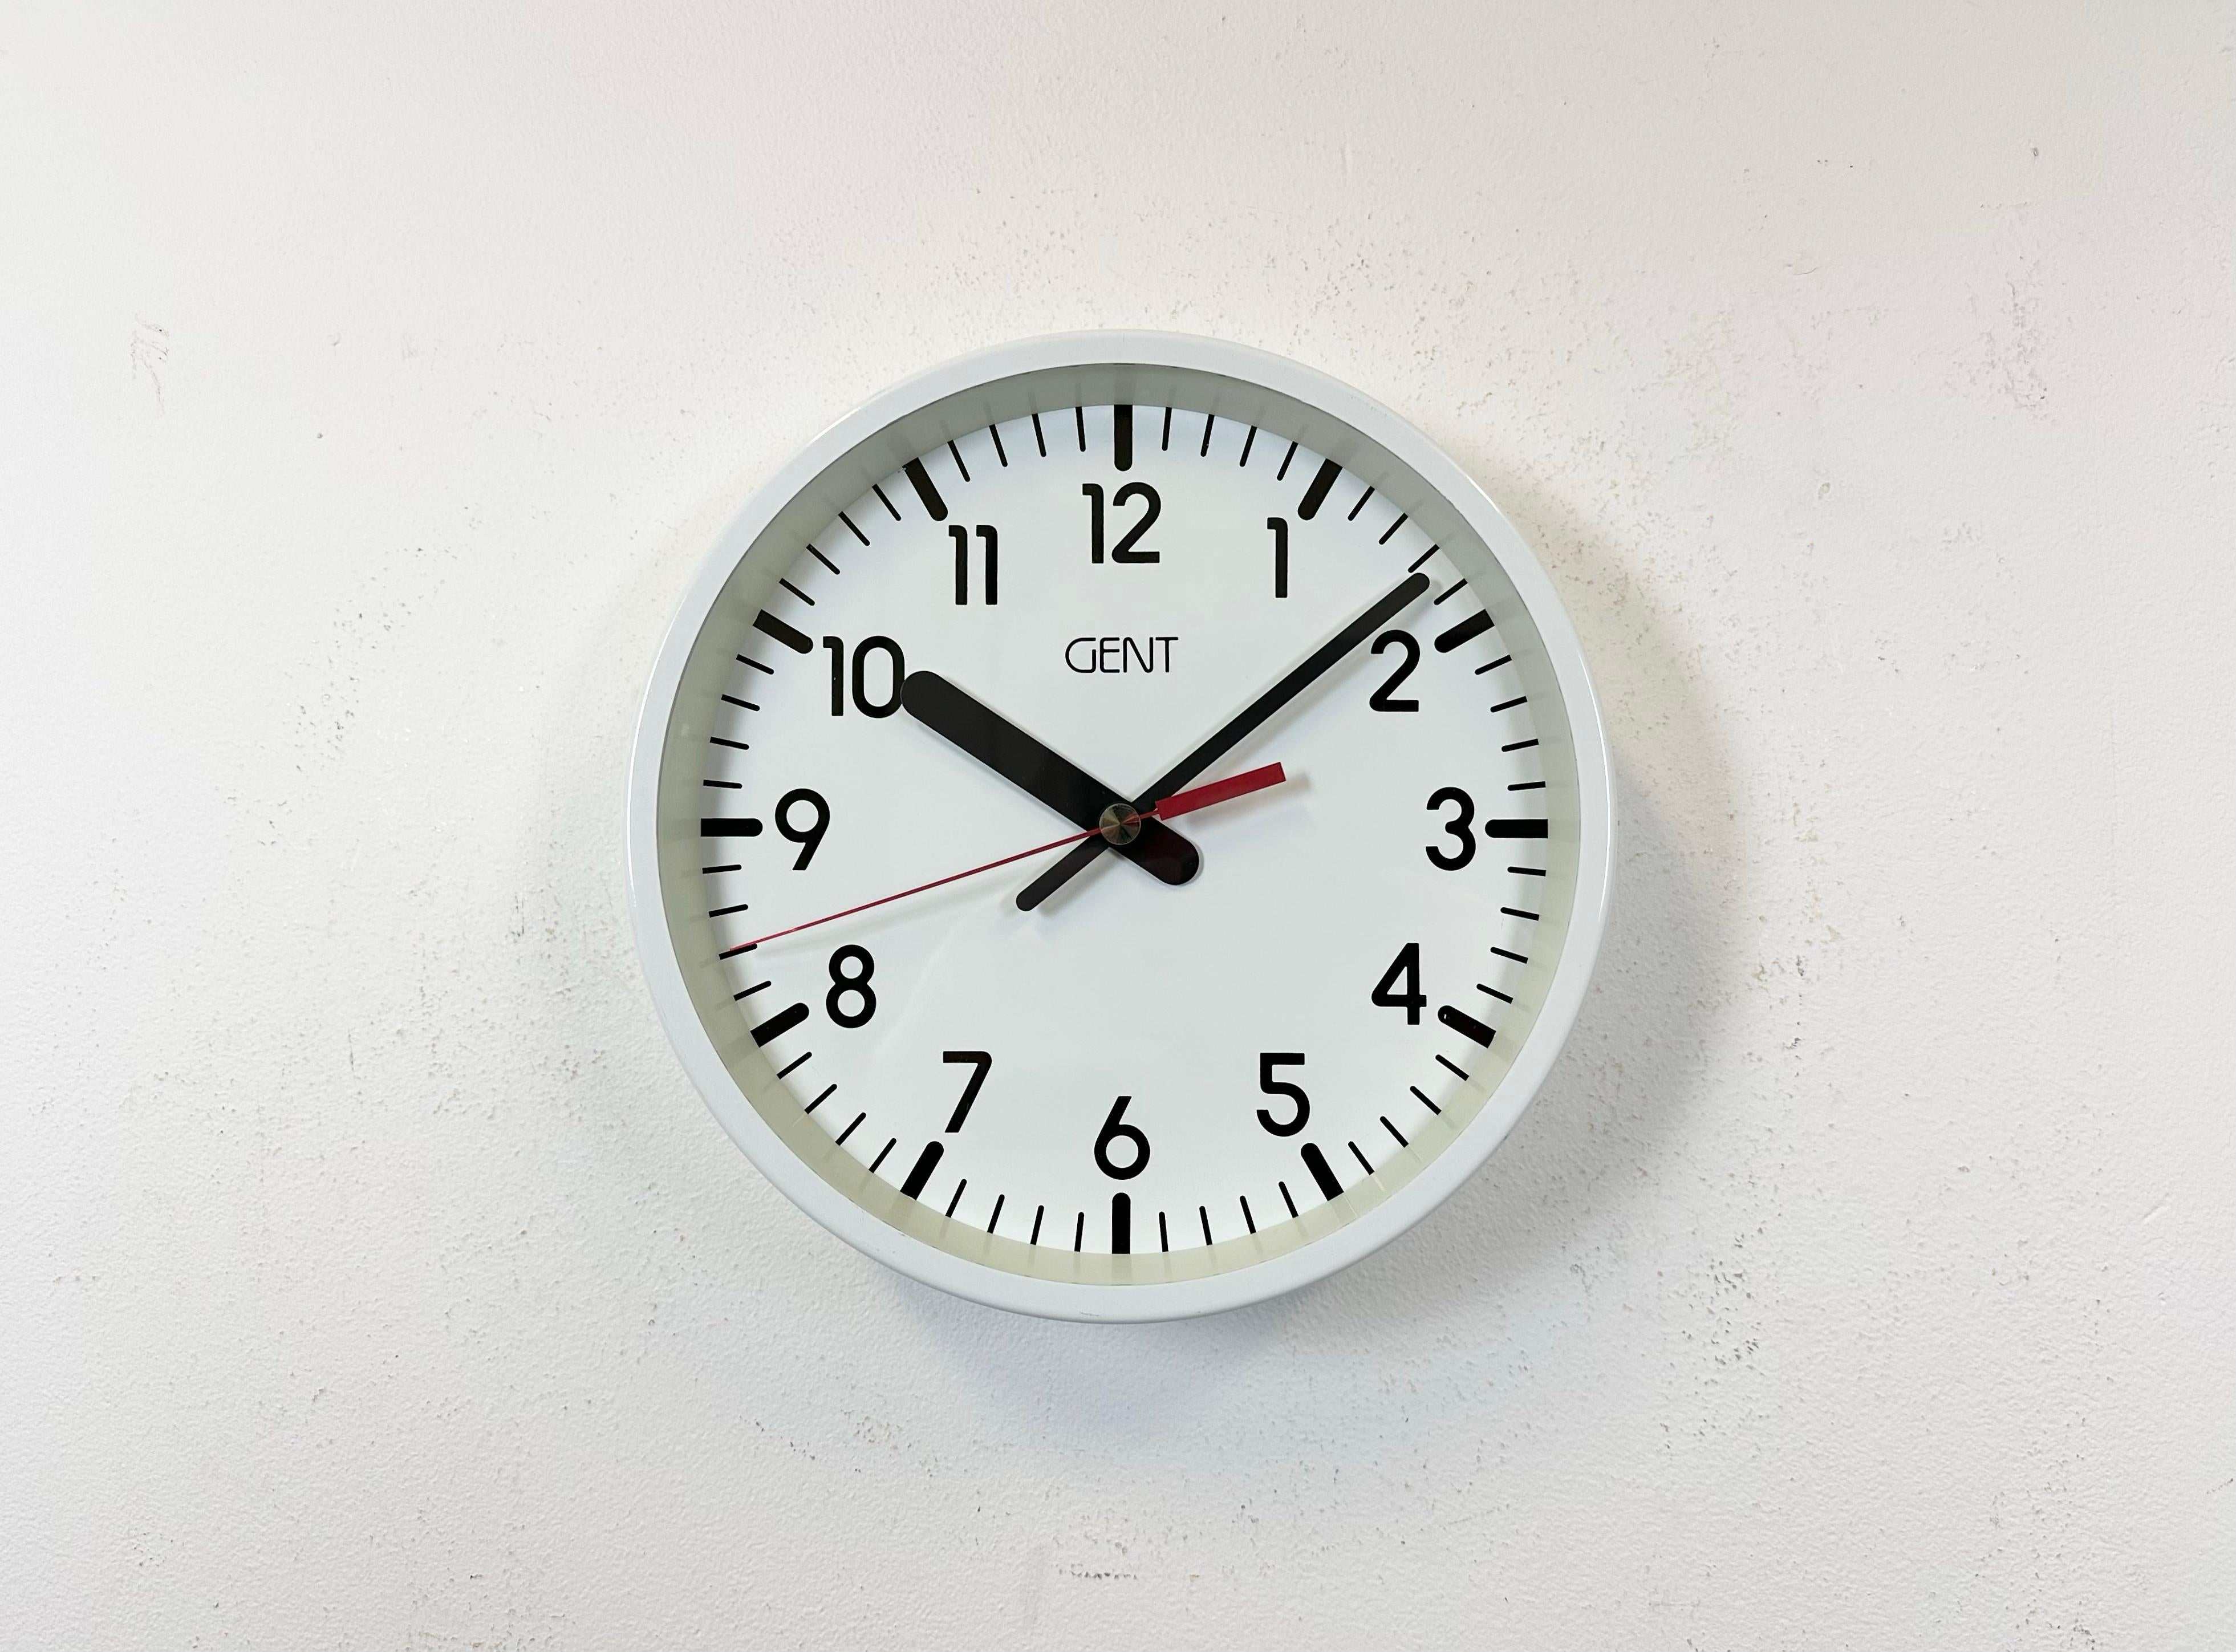 L'horloge murale Gent ( Gents of Leicester ) a été fabriquée au Royaume-Uni dans les années 1980. Elle se compose d'un cadre en fer blanc, d'un cadran en métal, d'aiguilles en aluminium et d'un couvercle en verre transparent. Le mouvement de la pile